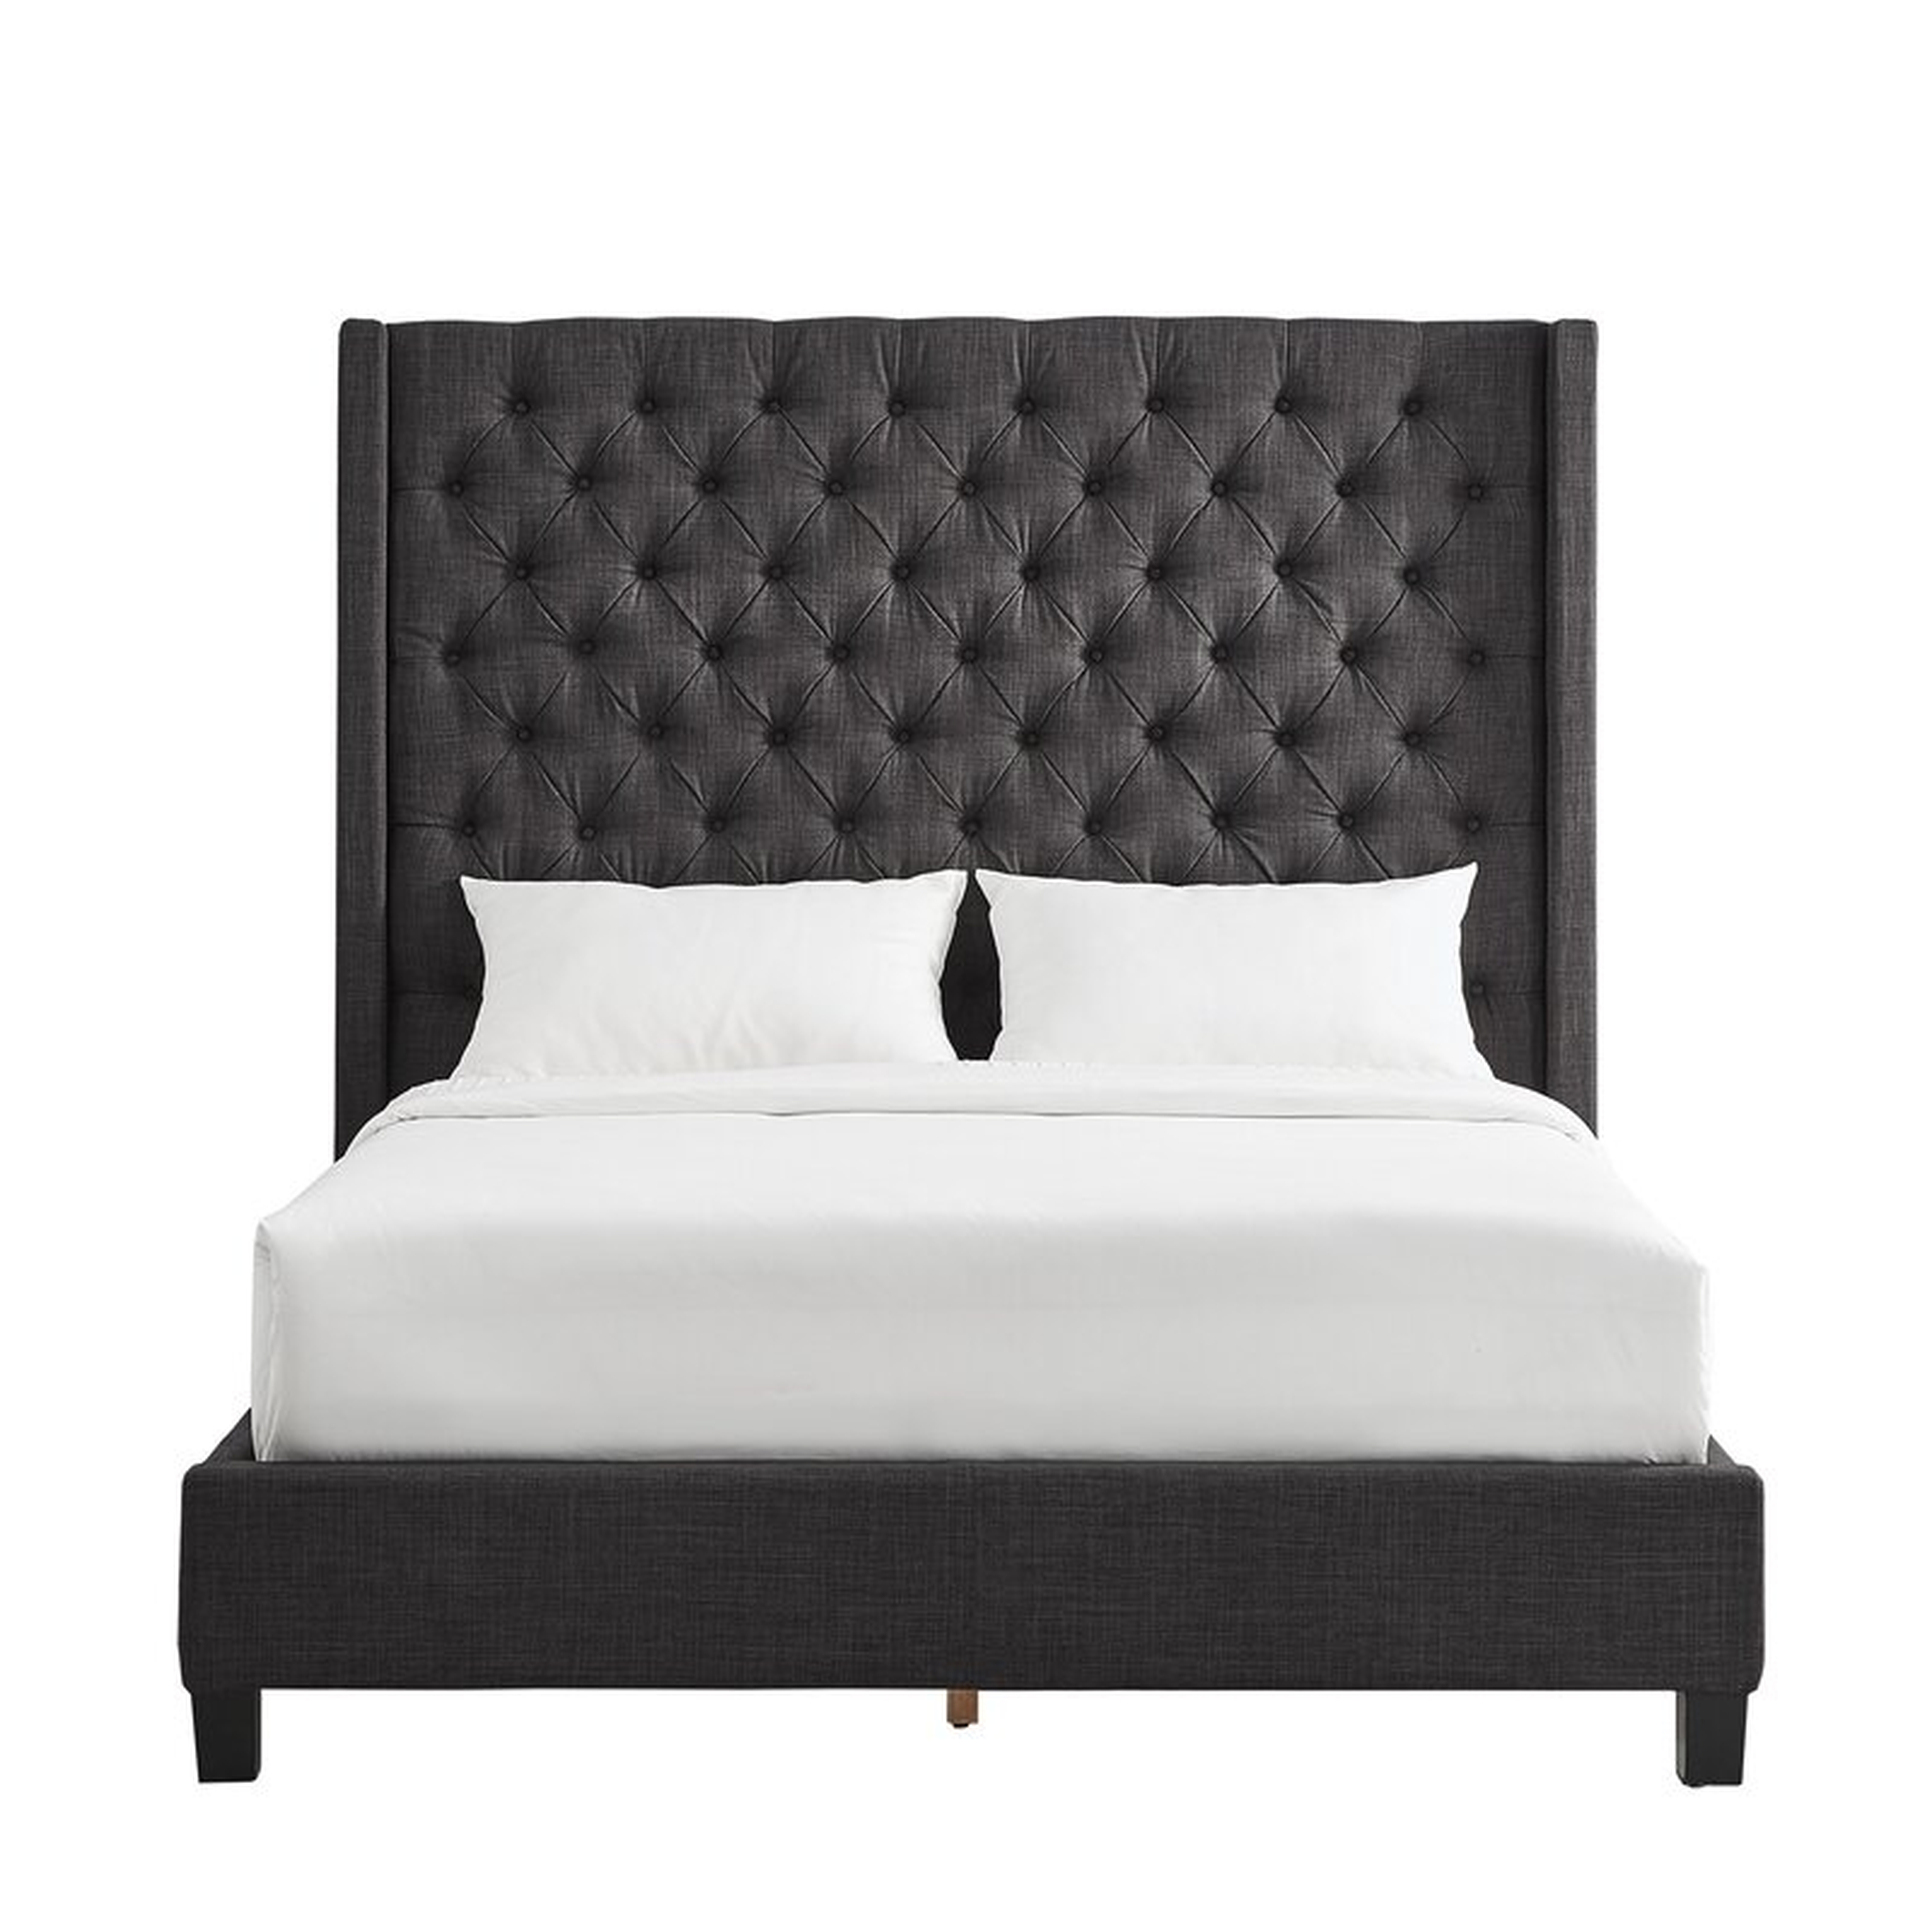 Mindenmines Tufted Upholstered Low Profile Platform Bed - Wayfair